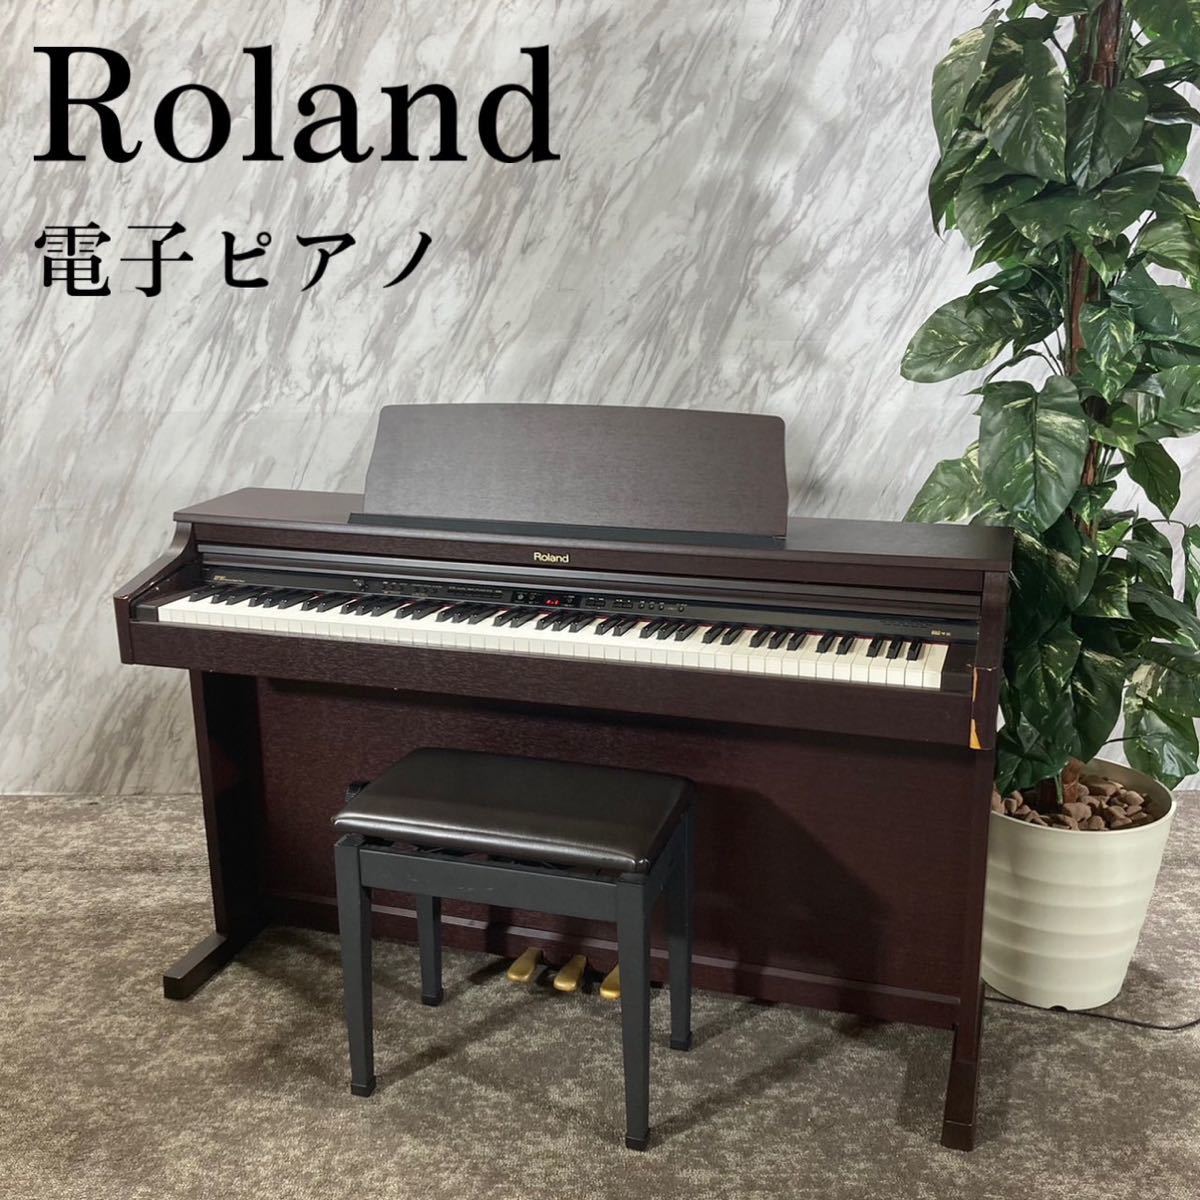 セール激安 Roland 電子ピアノ HP203-MH デジタルピアノ 88鍵 J